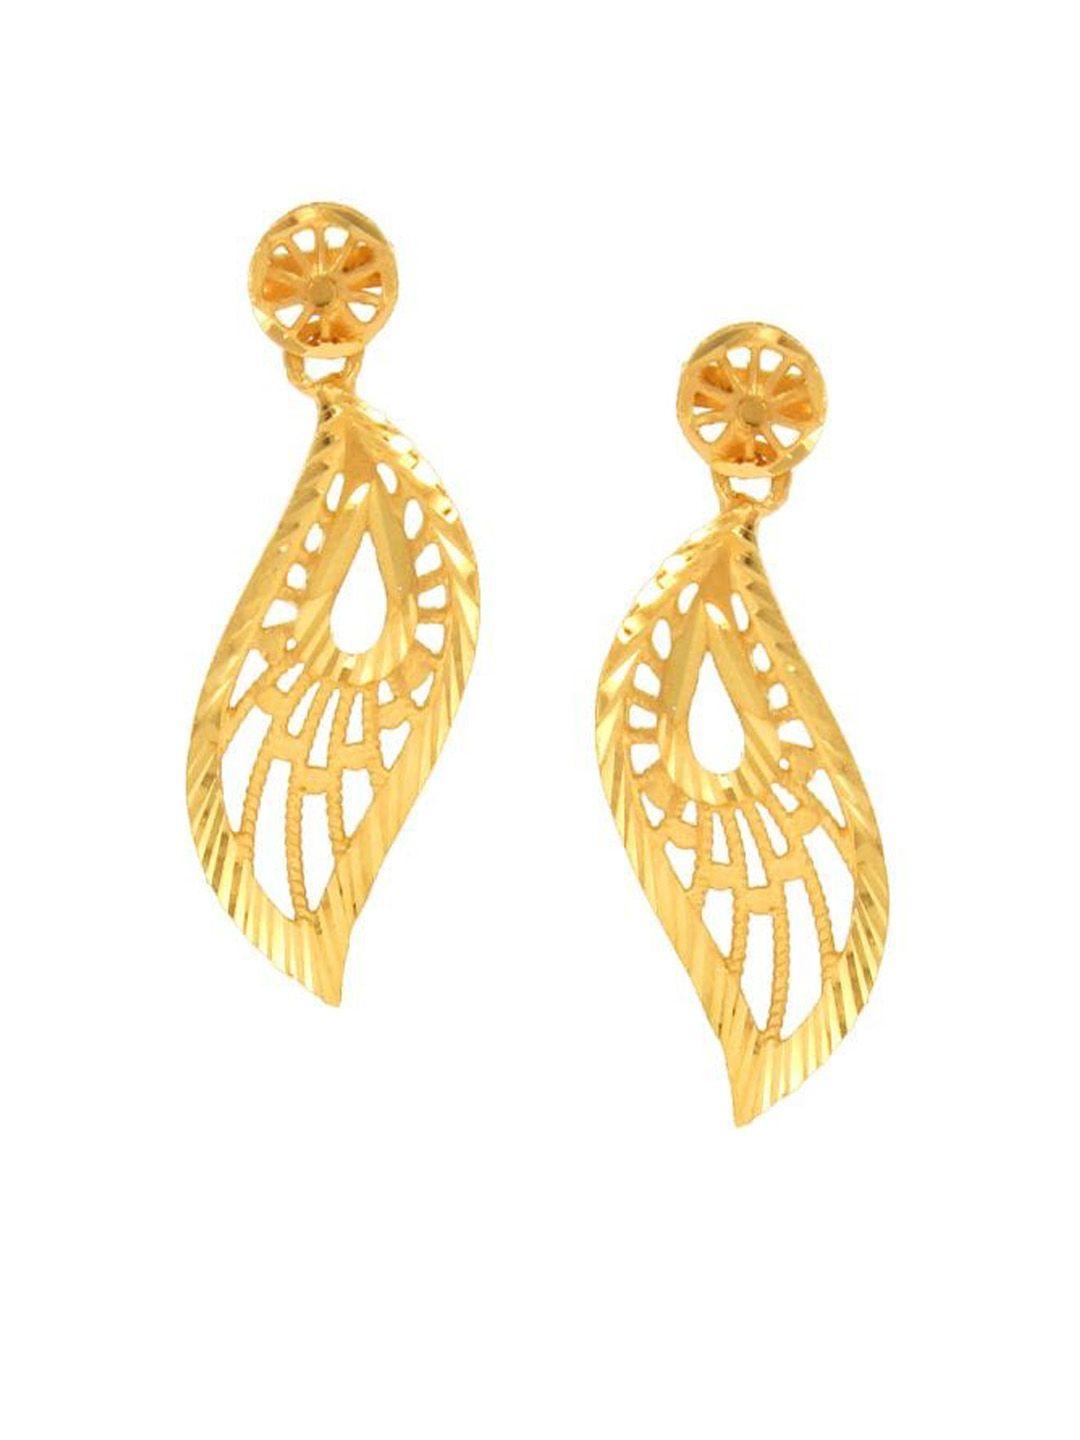 senco 22kt gold drop earrings-2.7gm